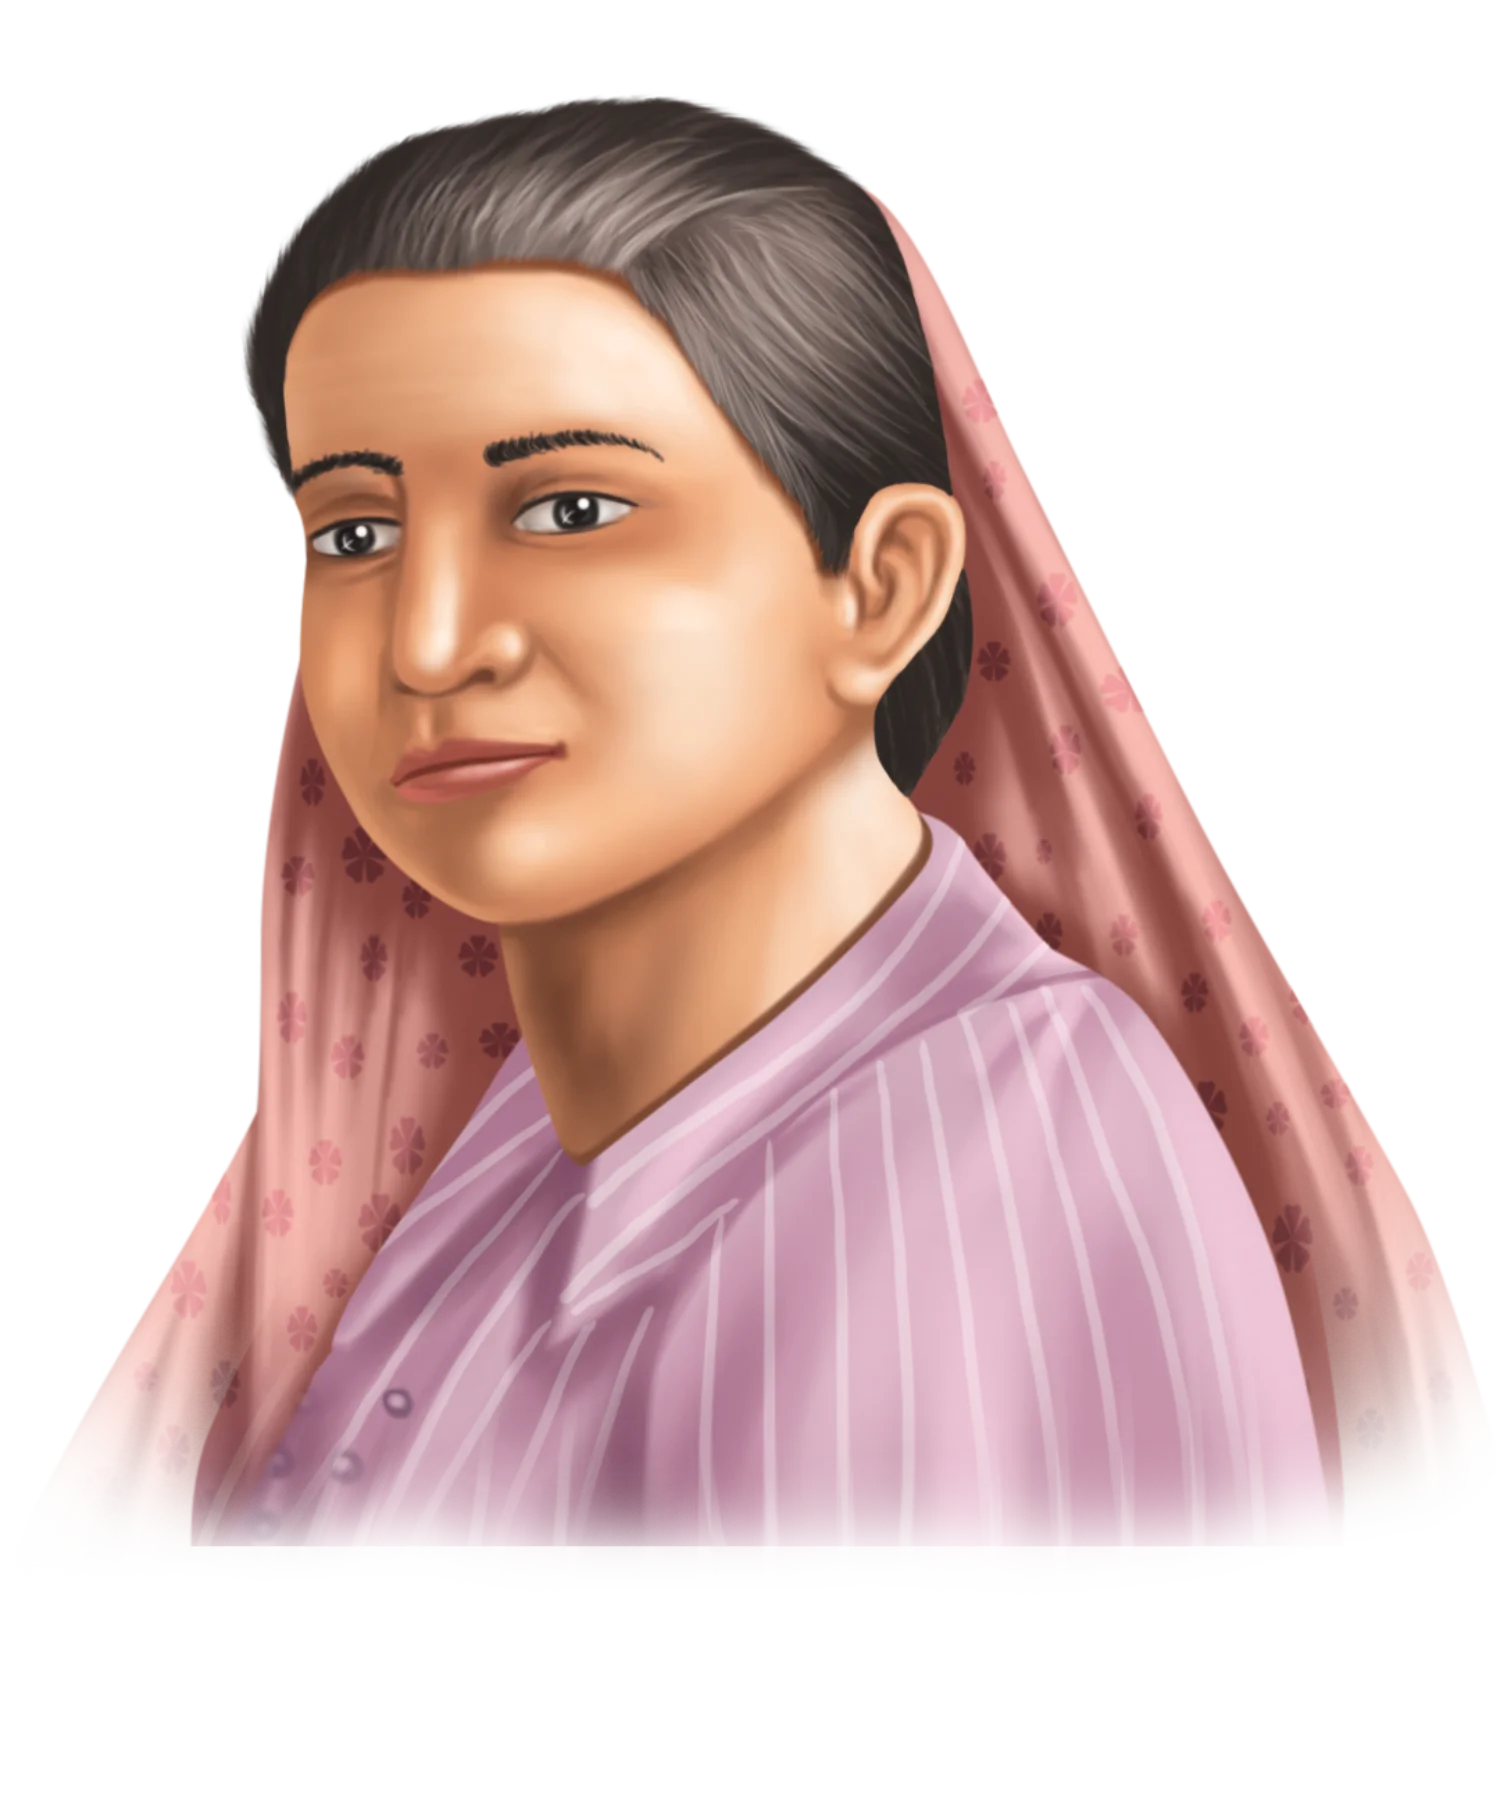 Madam Bhikaji Cama